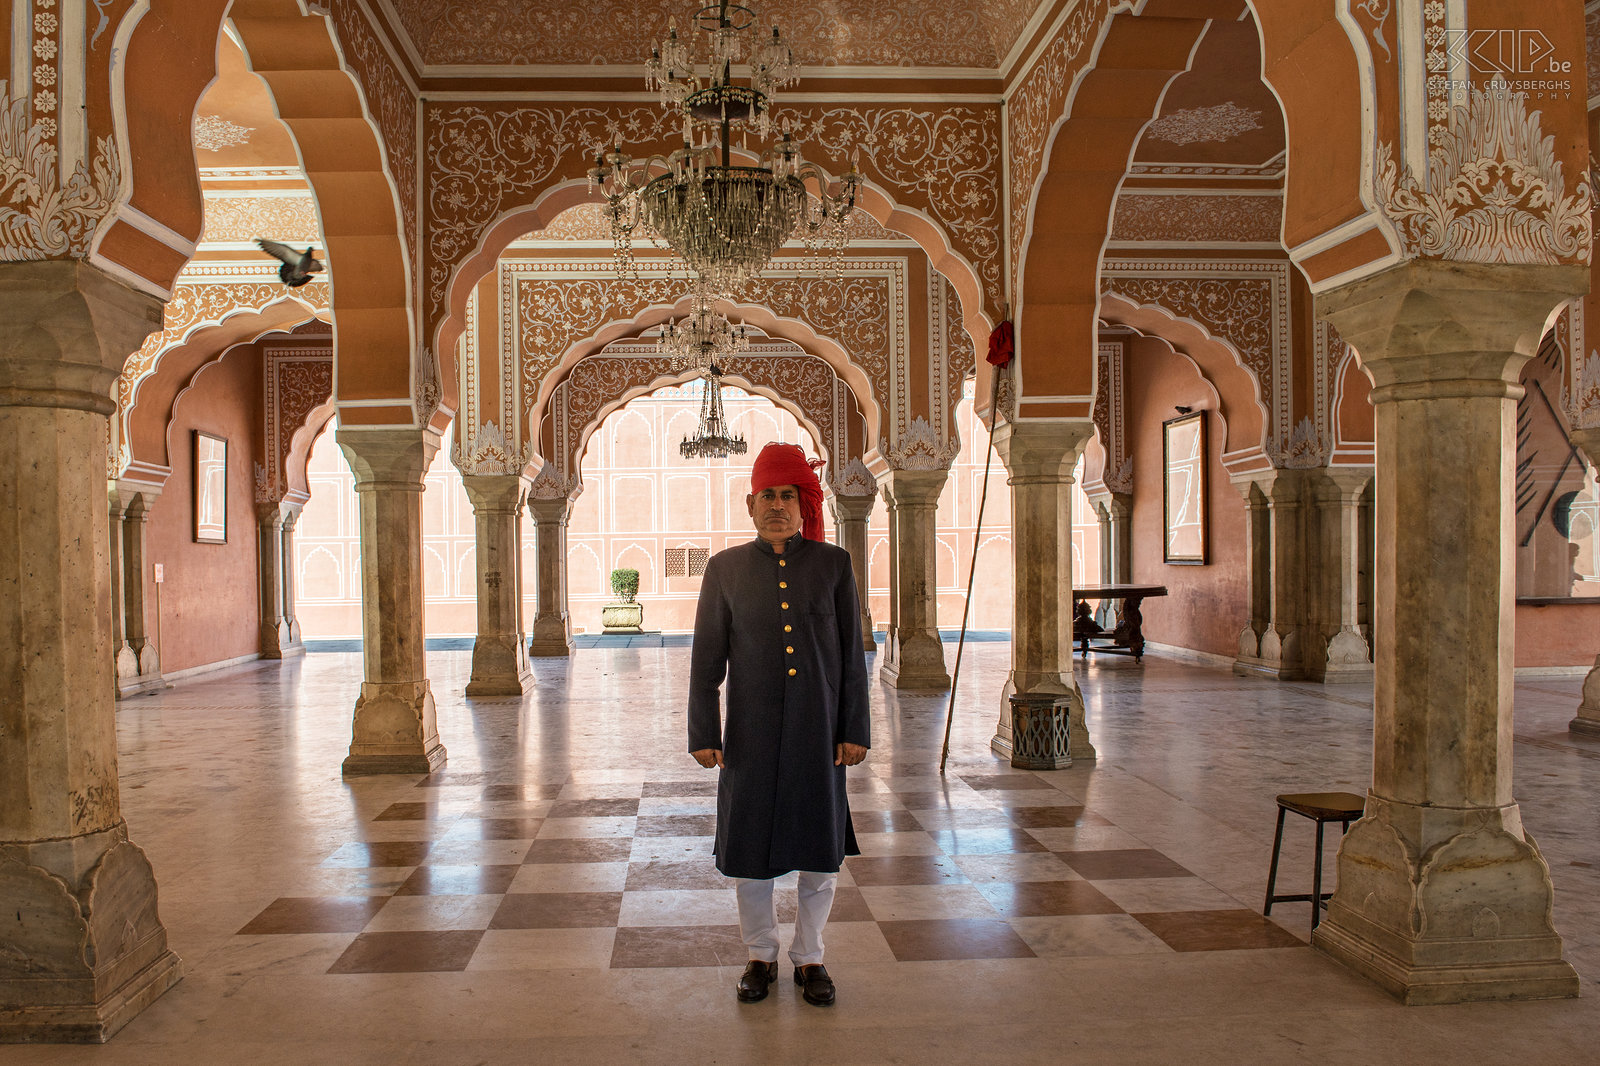 Jaipur - City palace Jaipur is één van de mooiste steden van Rajasthan, die met haar schitterende paleizen, forten en tempels de weelde van de maharadja uitdrukt. De bijnaam van de stad is 'The Pink City'. Eén van de publiekstrekkers van Jaipur is het City Palace. Dit paleis is voor een deel museum en voor een deel het privé-verblijf van de koninklijke familie van Jaipur, de Maharaja en zijn familie. Stefan Cruysberghs